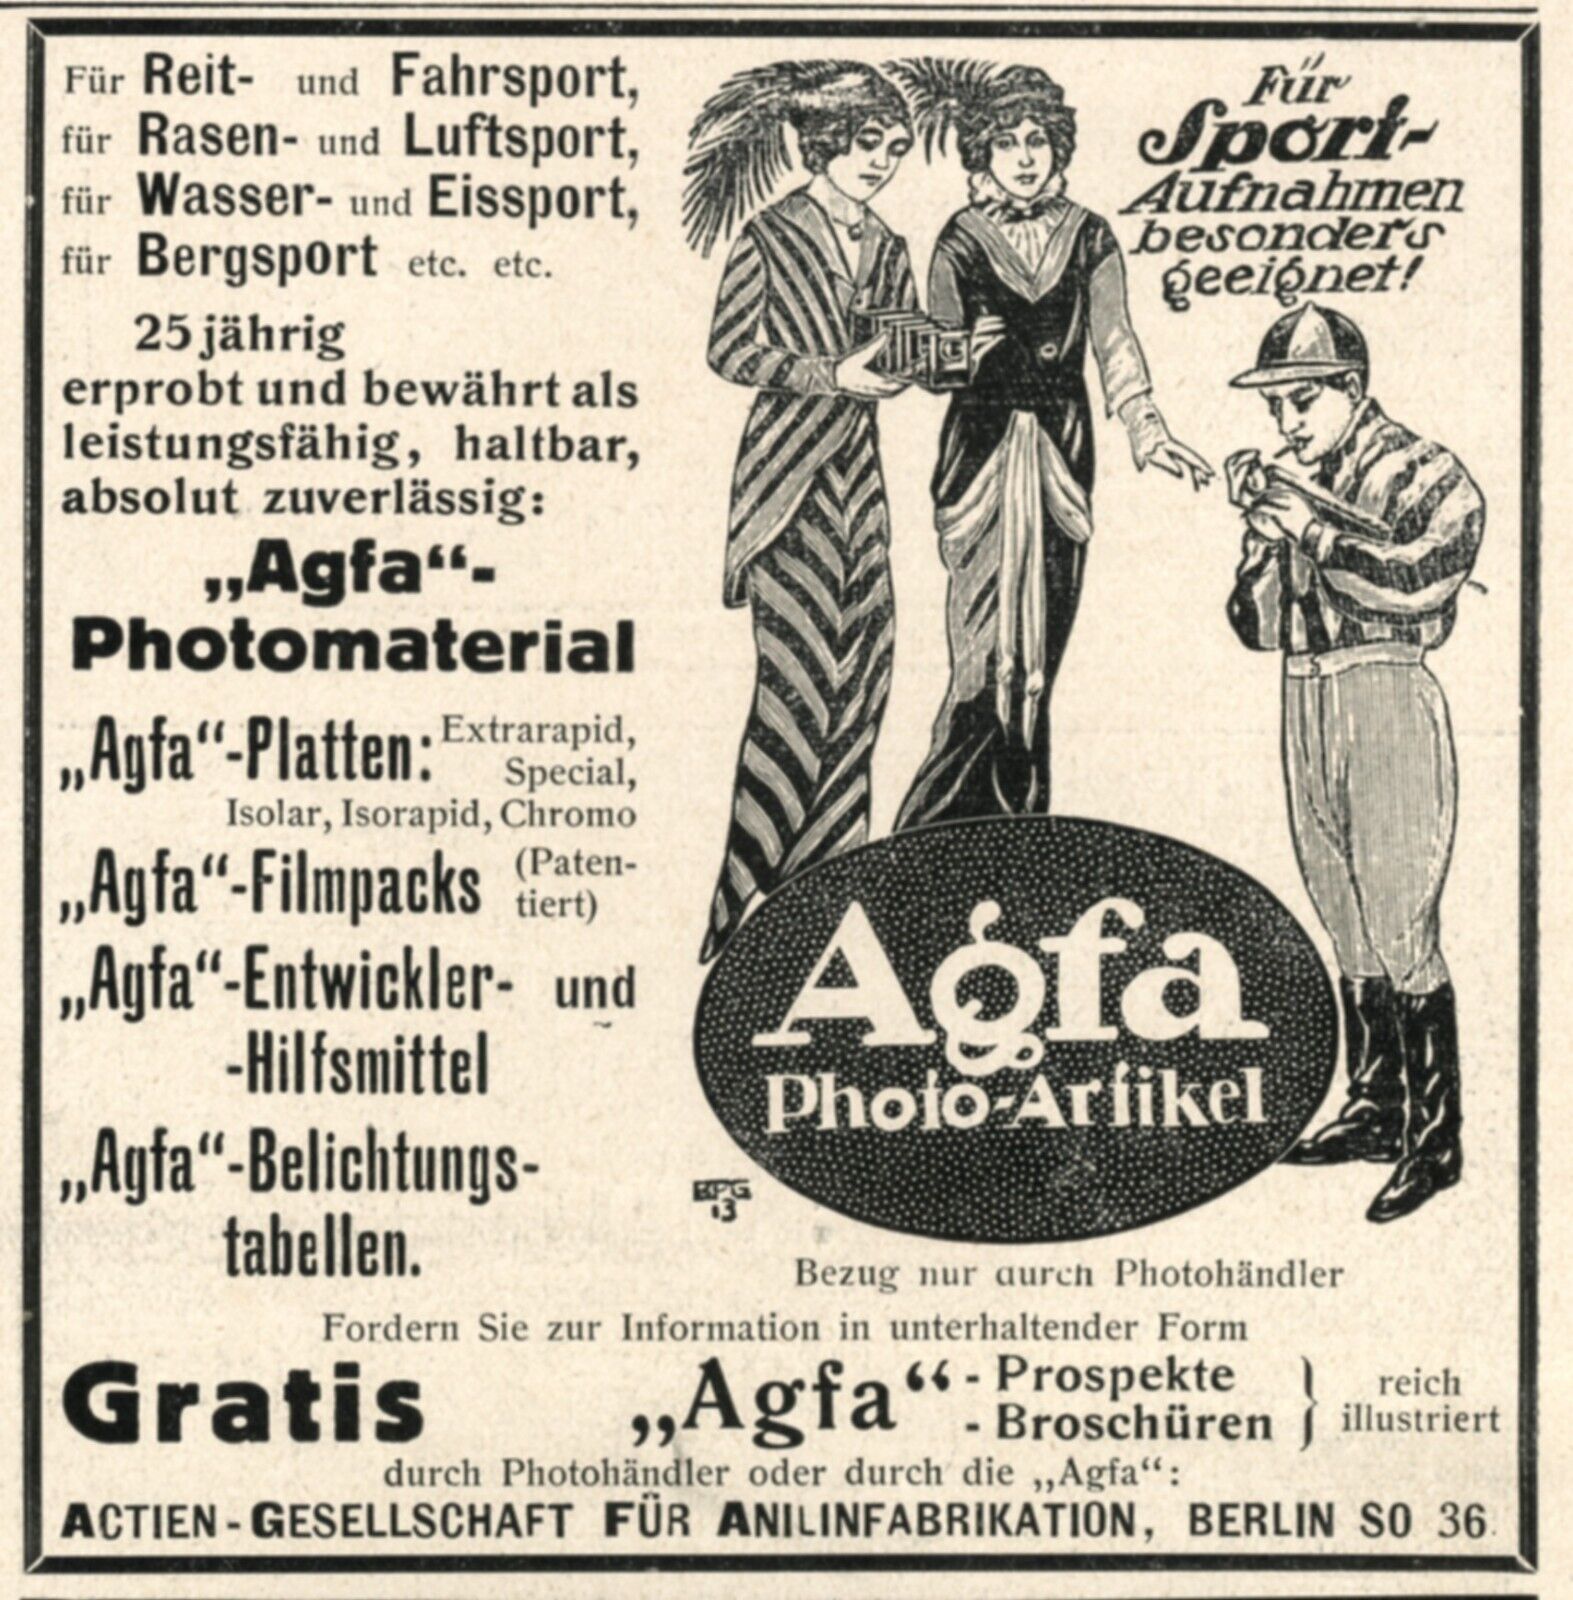 Agfa photo article German 1914 ad ladies jockey advertgising Berlin